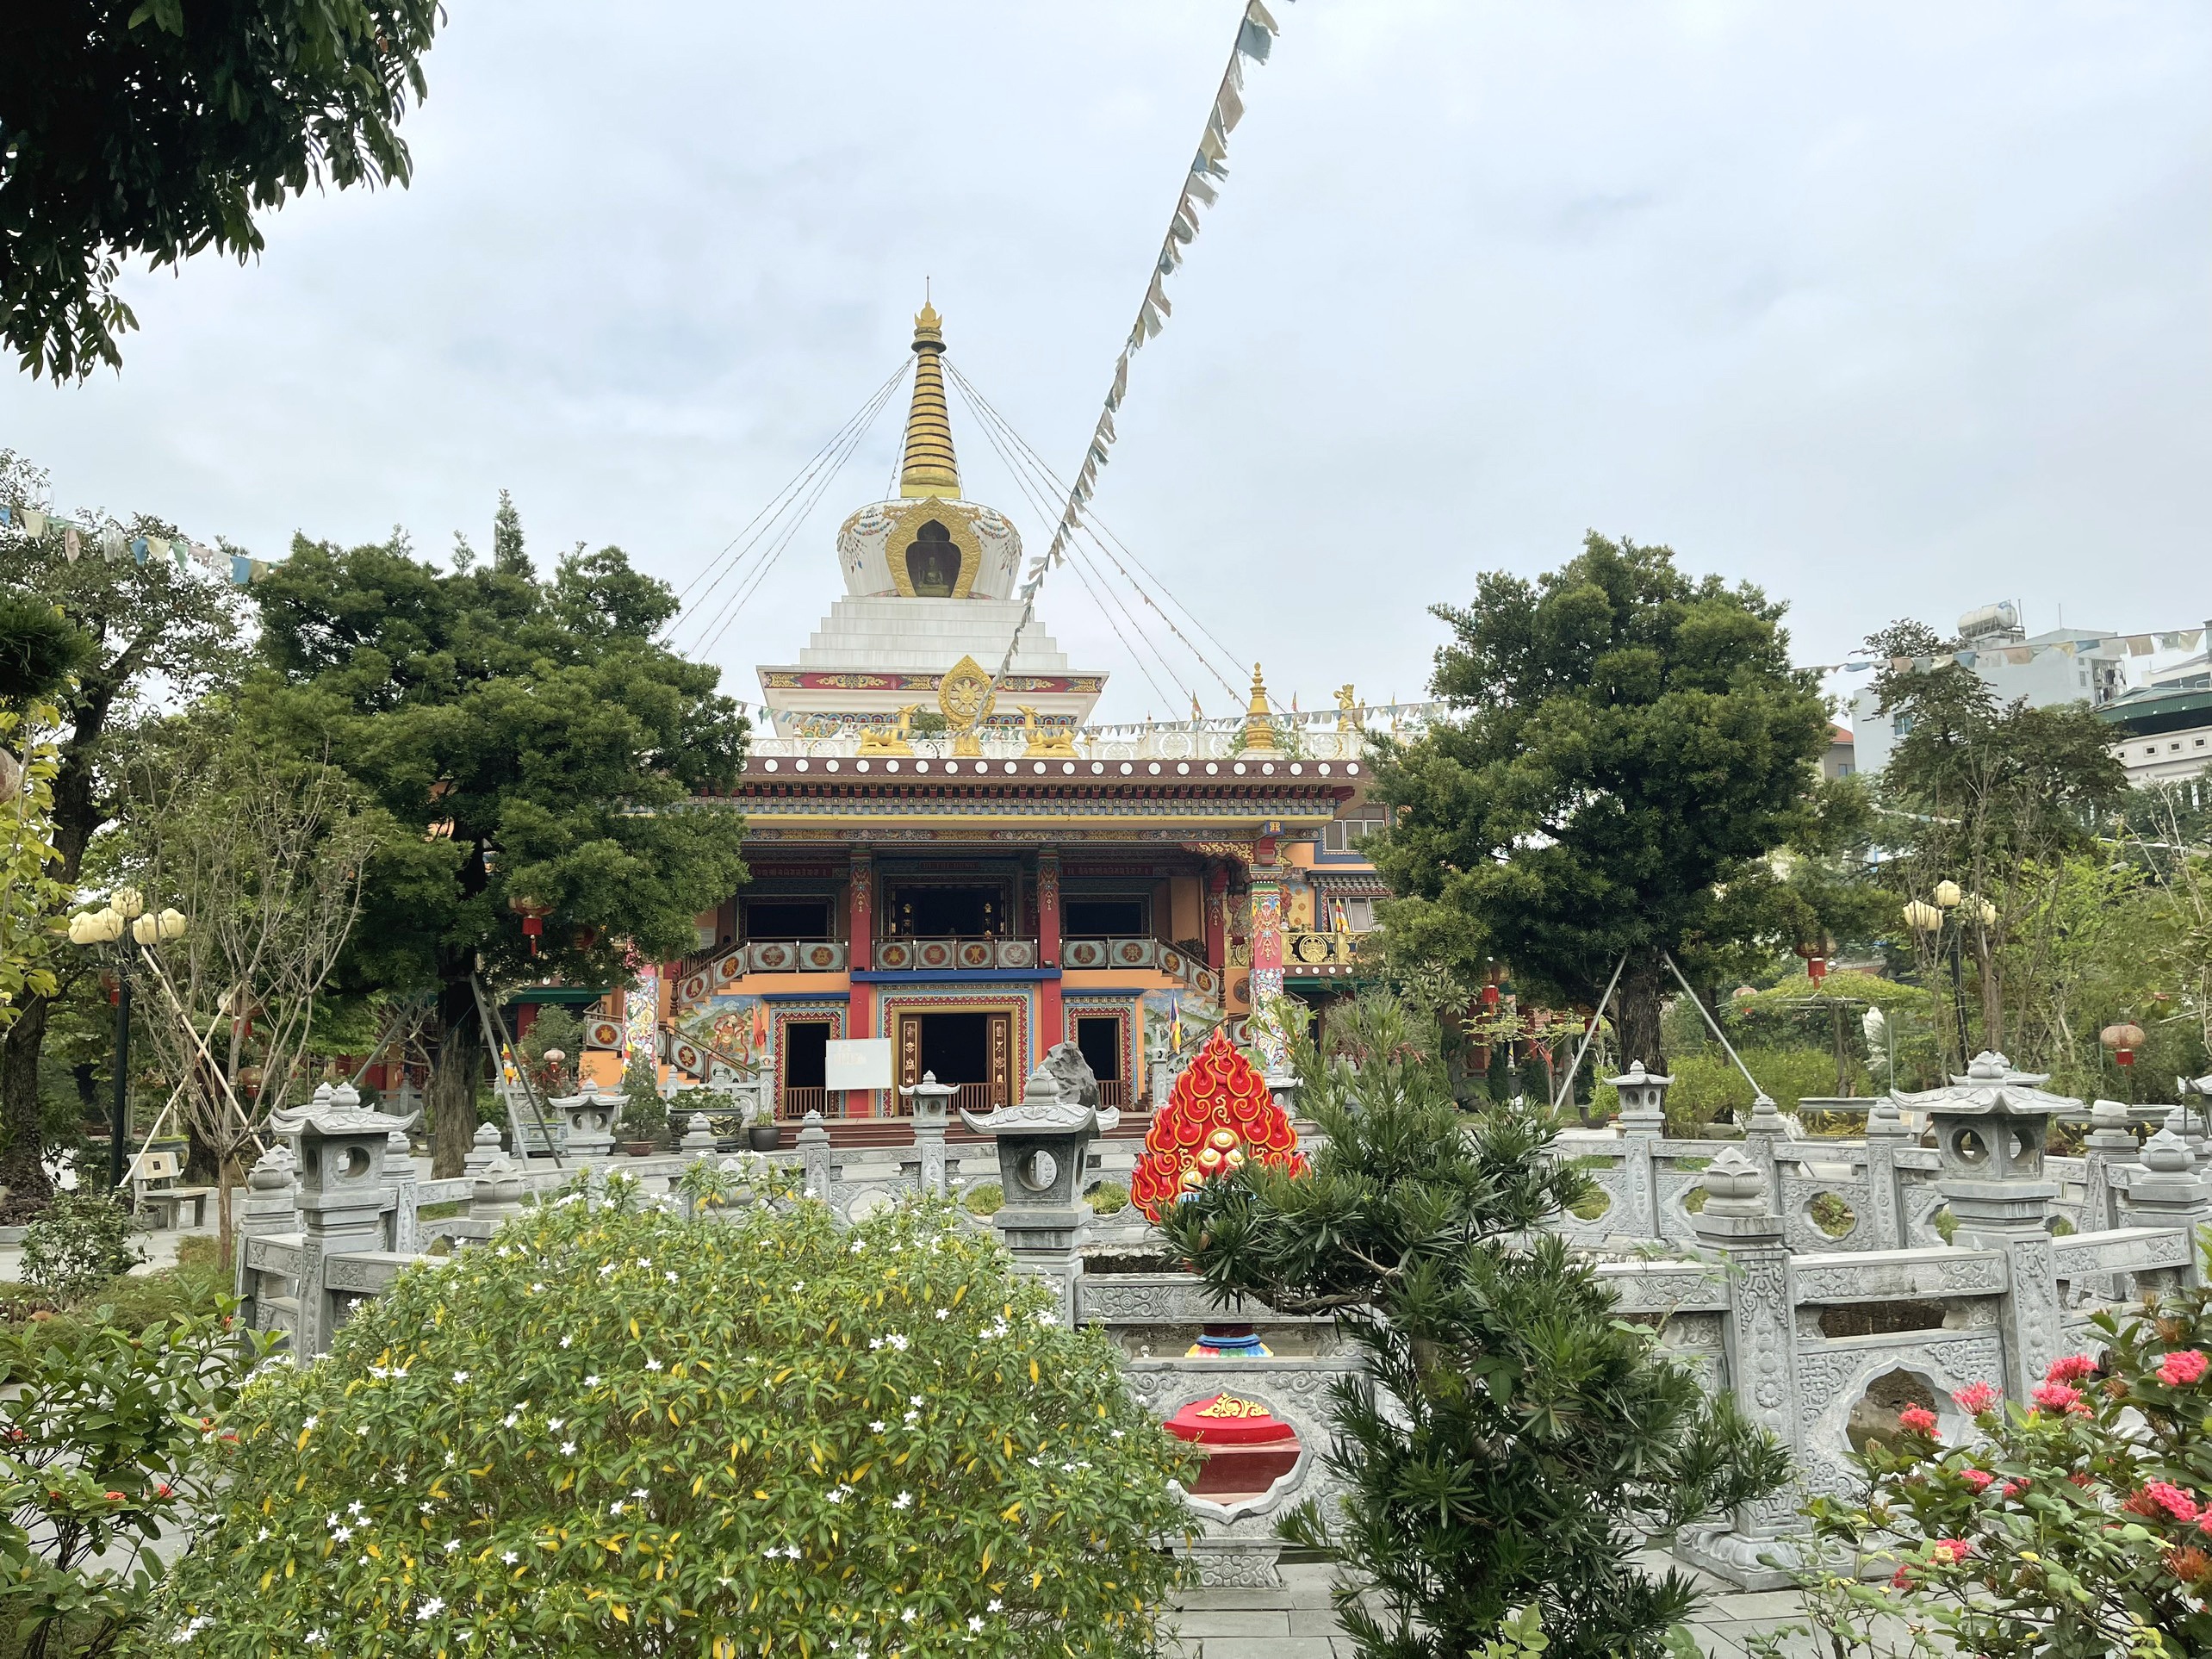 Thưởng thức ngôi chùa với kiến trúc Tây Tạng độc đáo tại Hà Nội - 5